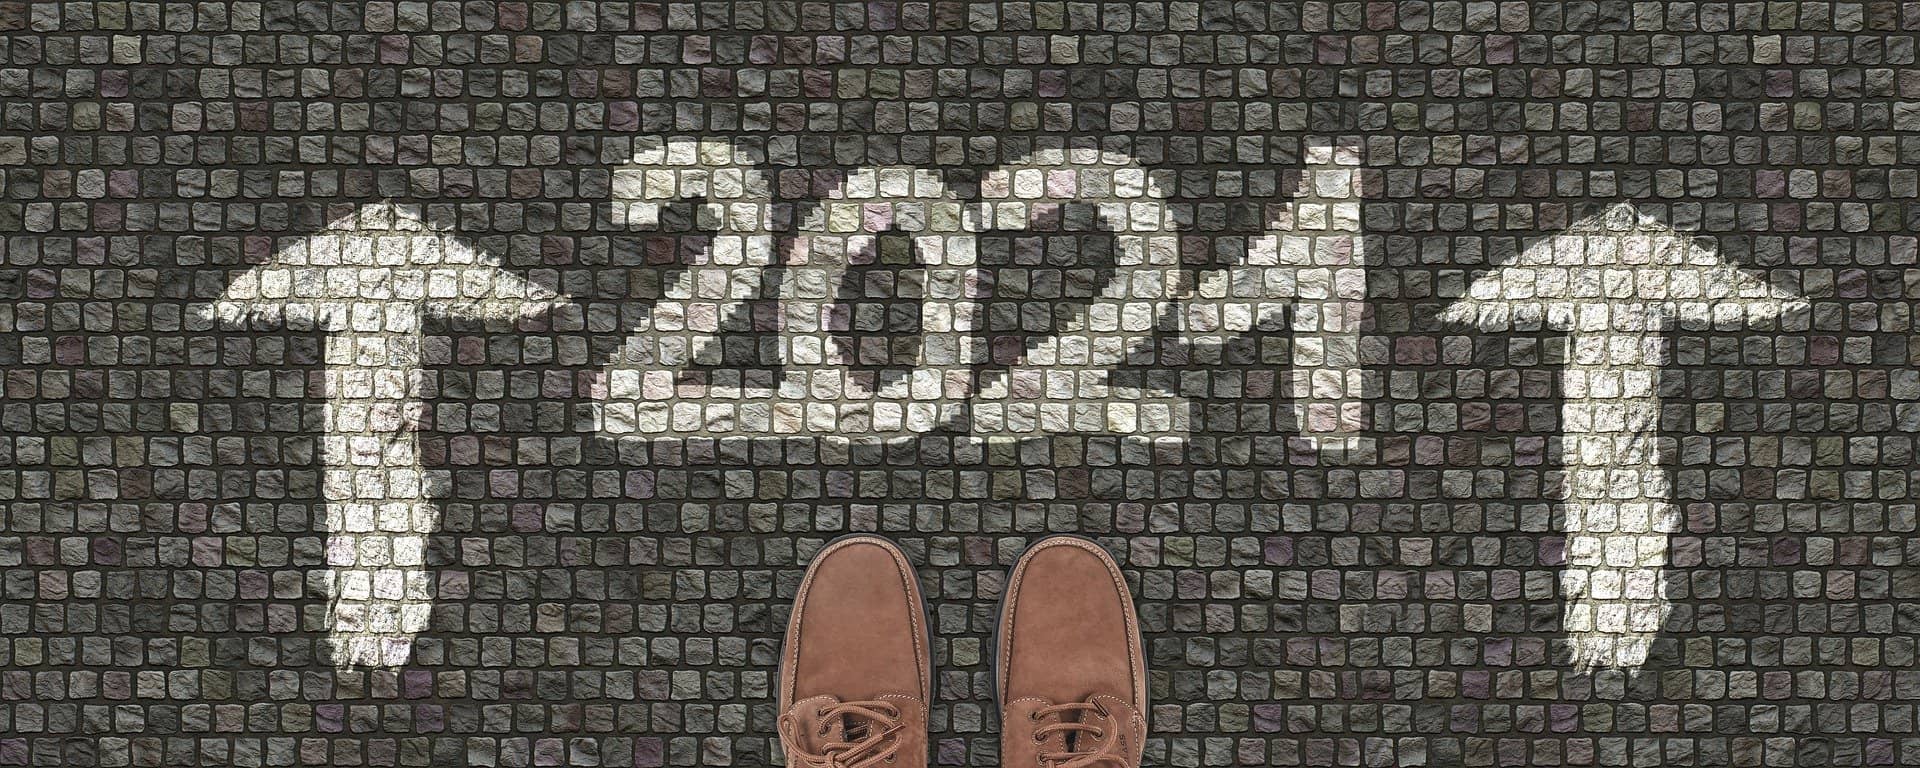 ¡FELIZ AÑO 2021! UNA MIRADA Y REVISIÓN 4